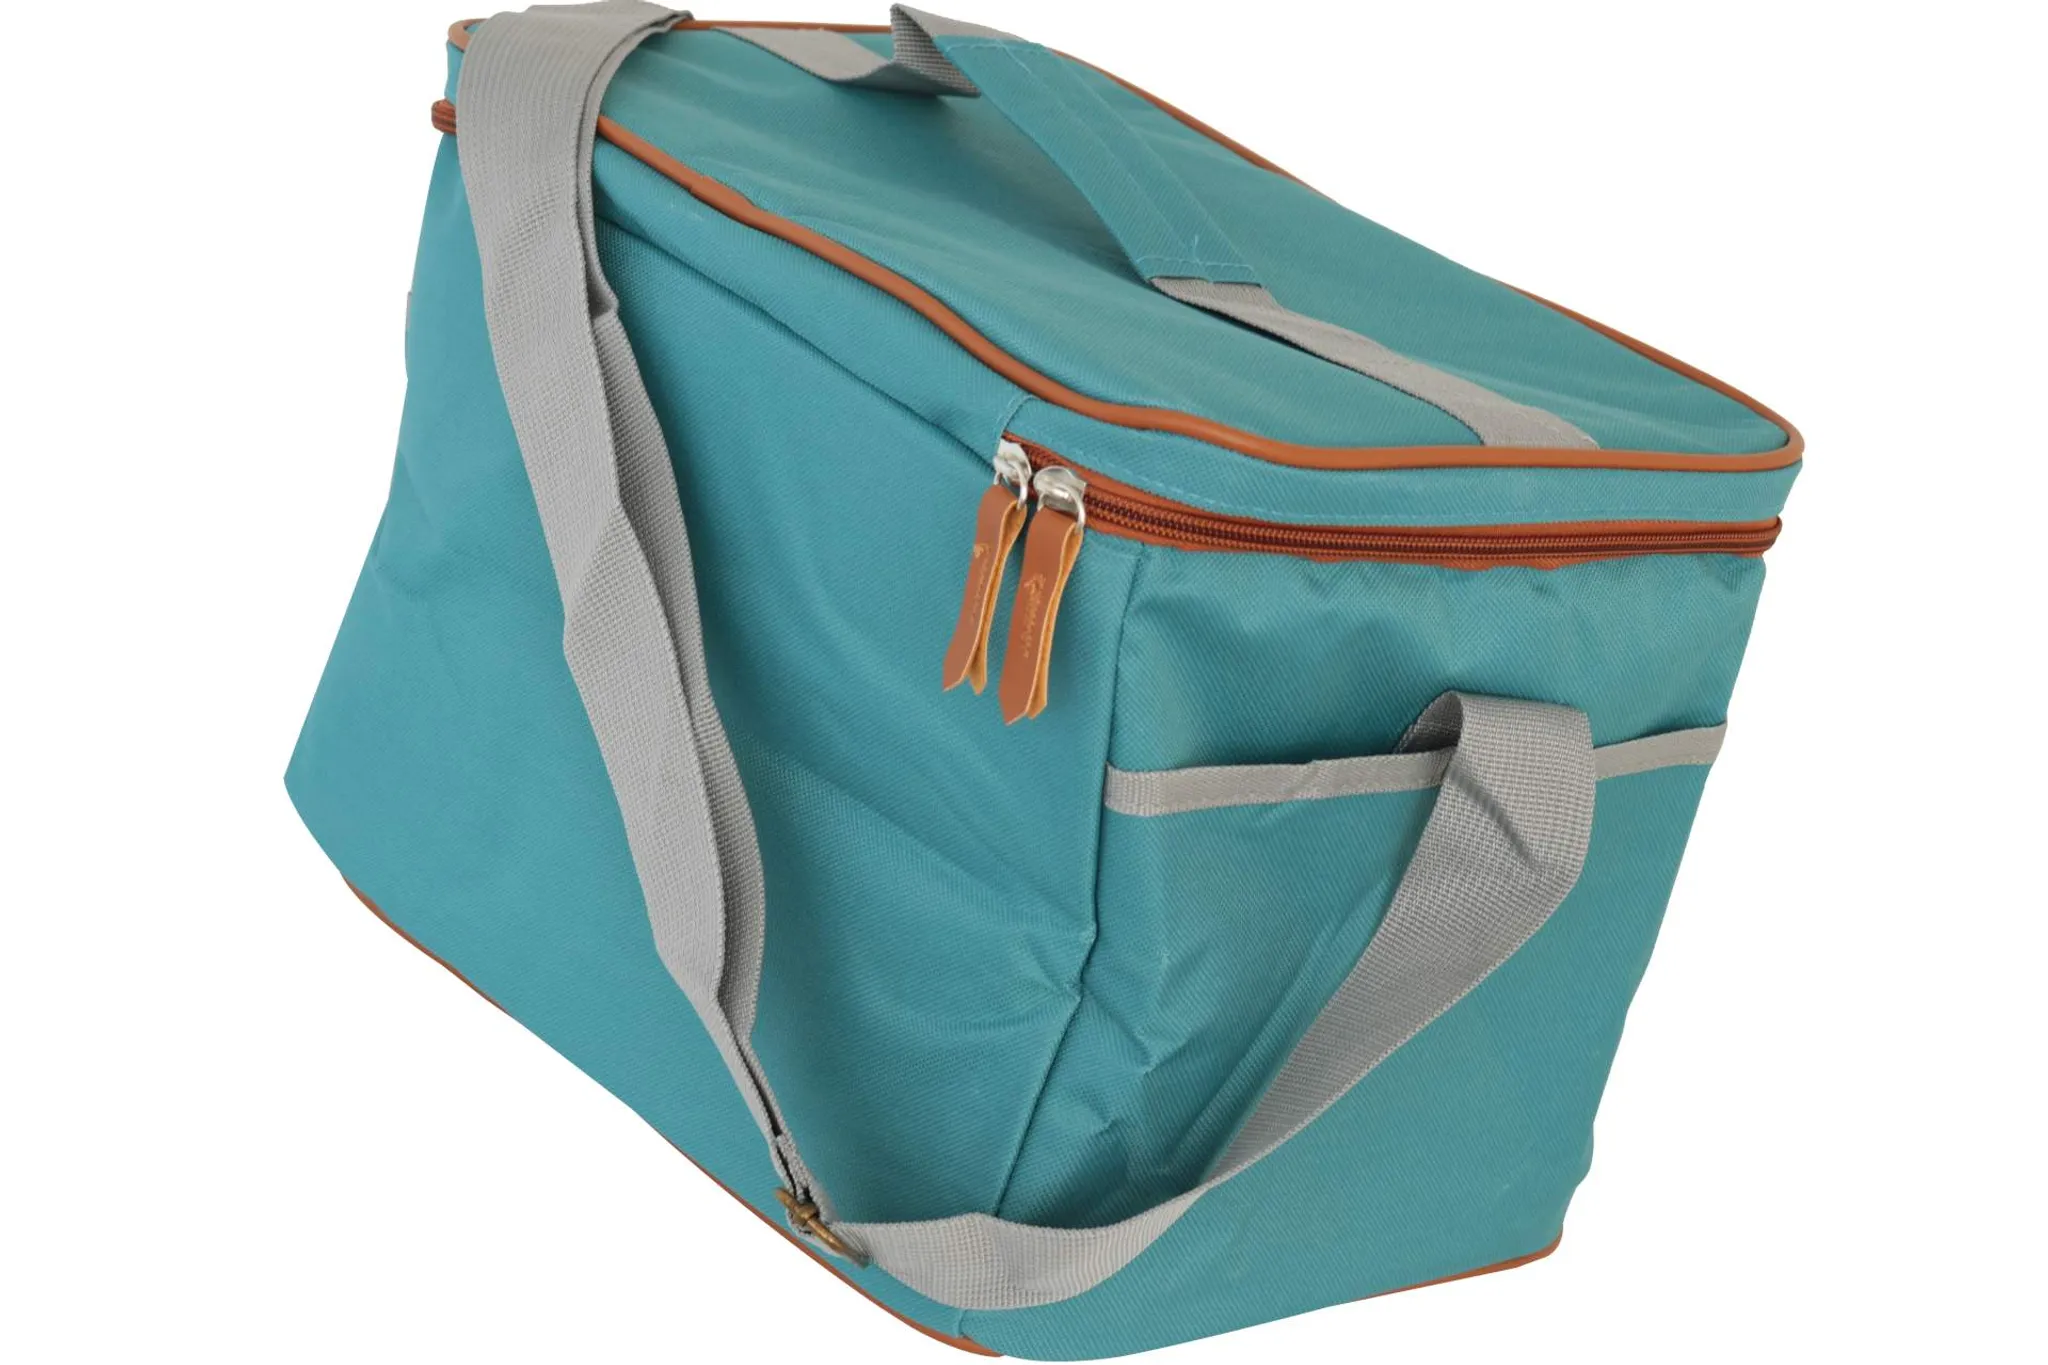 Kühltasche, Picknicktasche Premium 19 Ltr., 23x35x24cm, isoliert